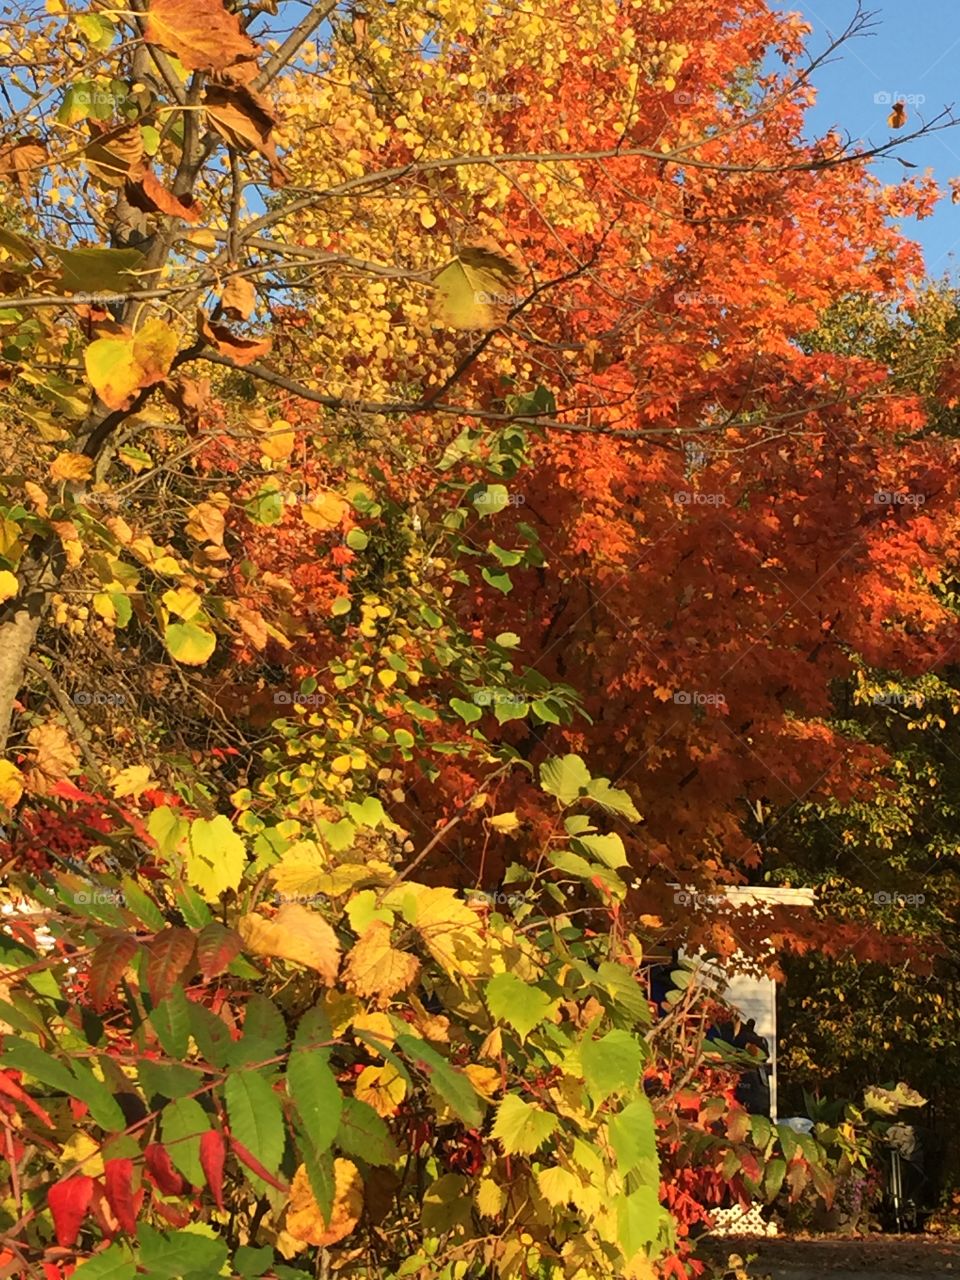 Beautiful Fall Leaves in Beautiful Fall Colors 